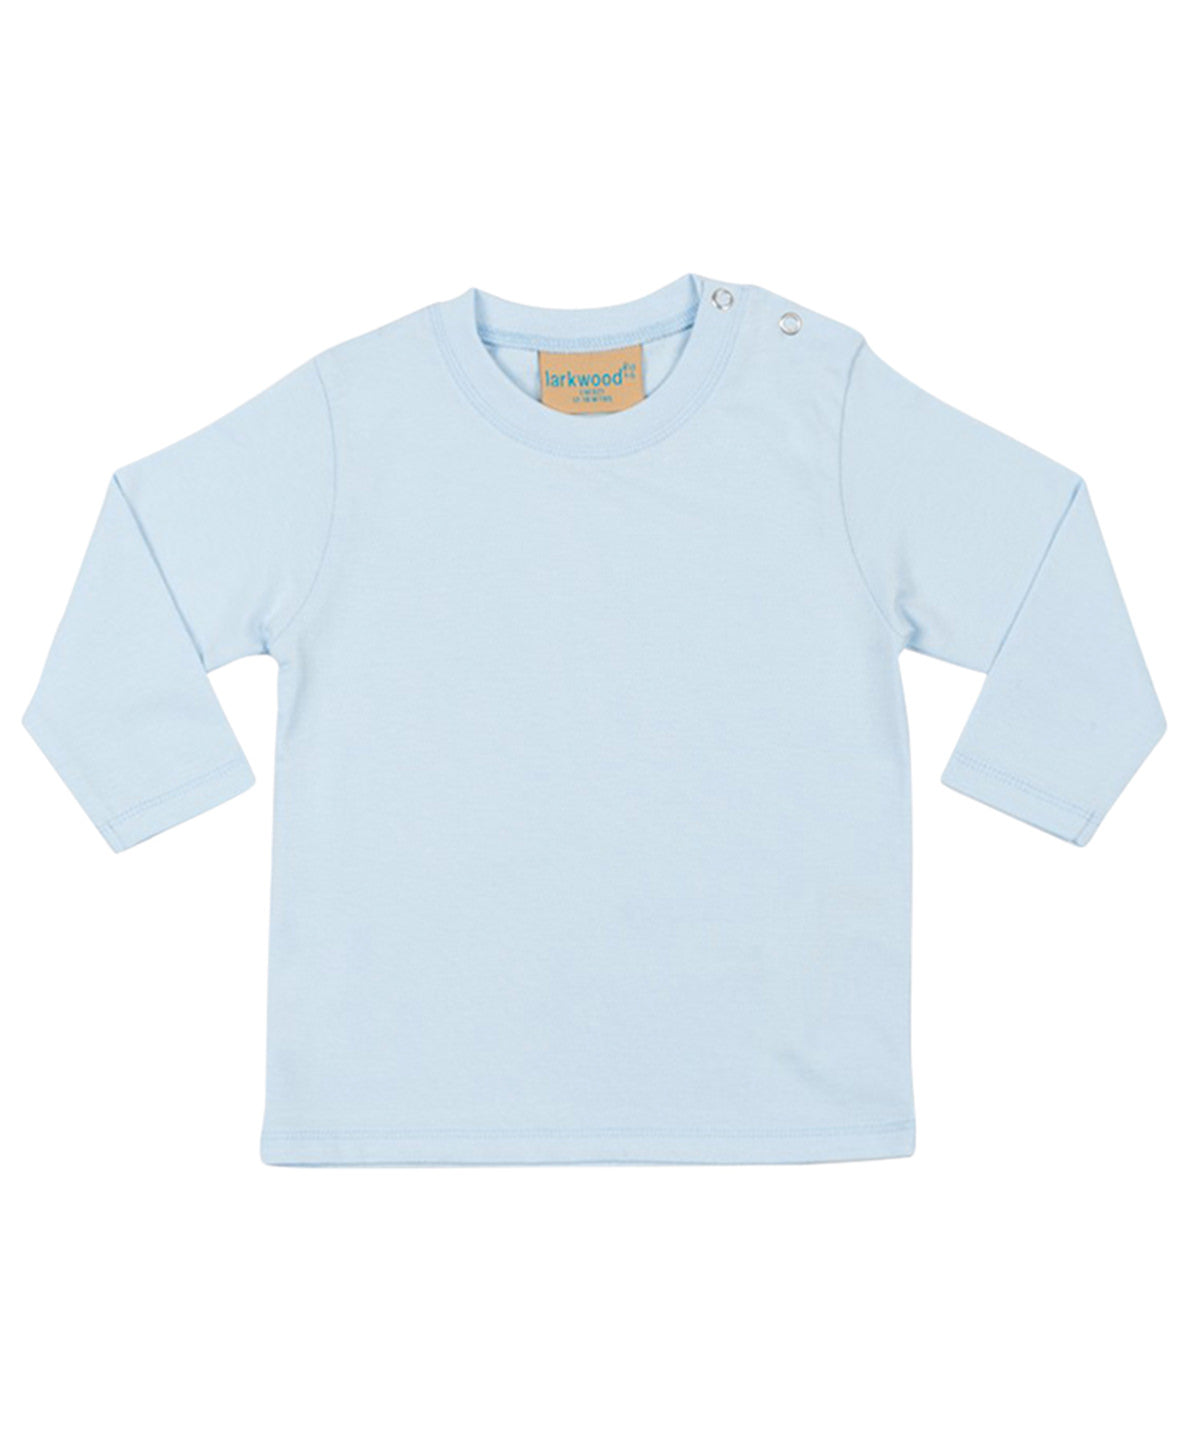 Stuttermabolir - Long-sleeved T-shirt